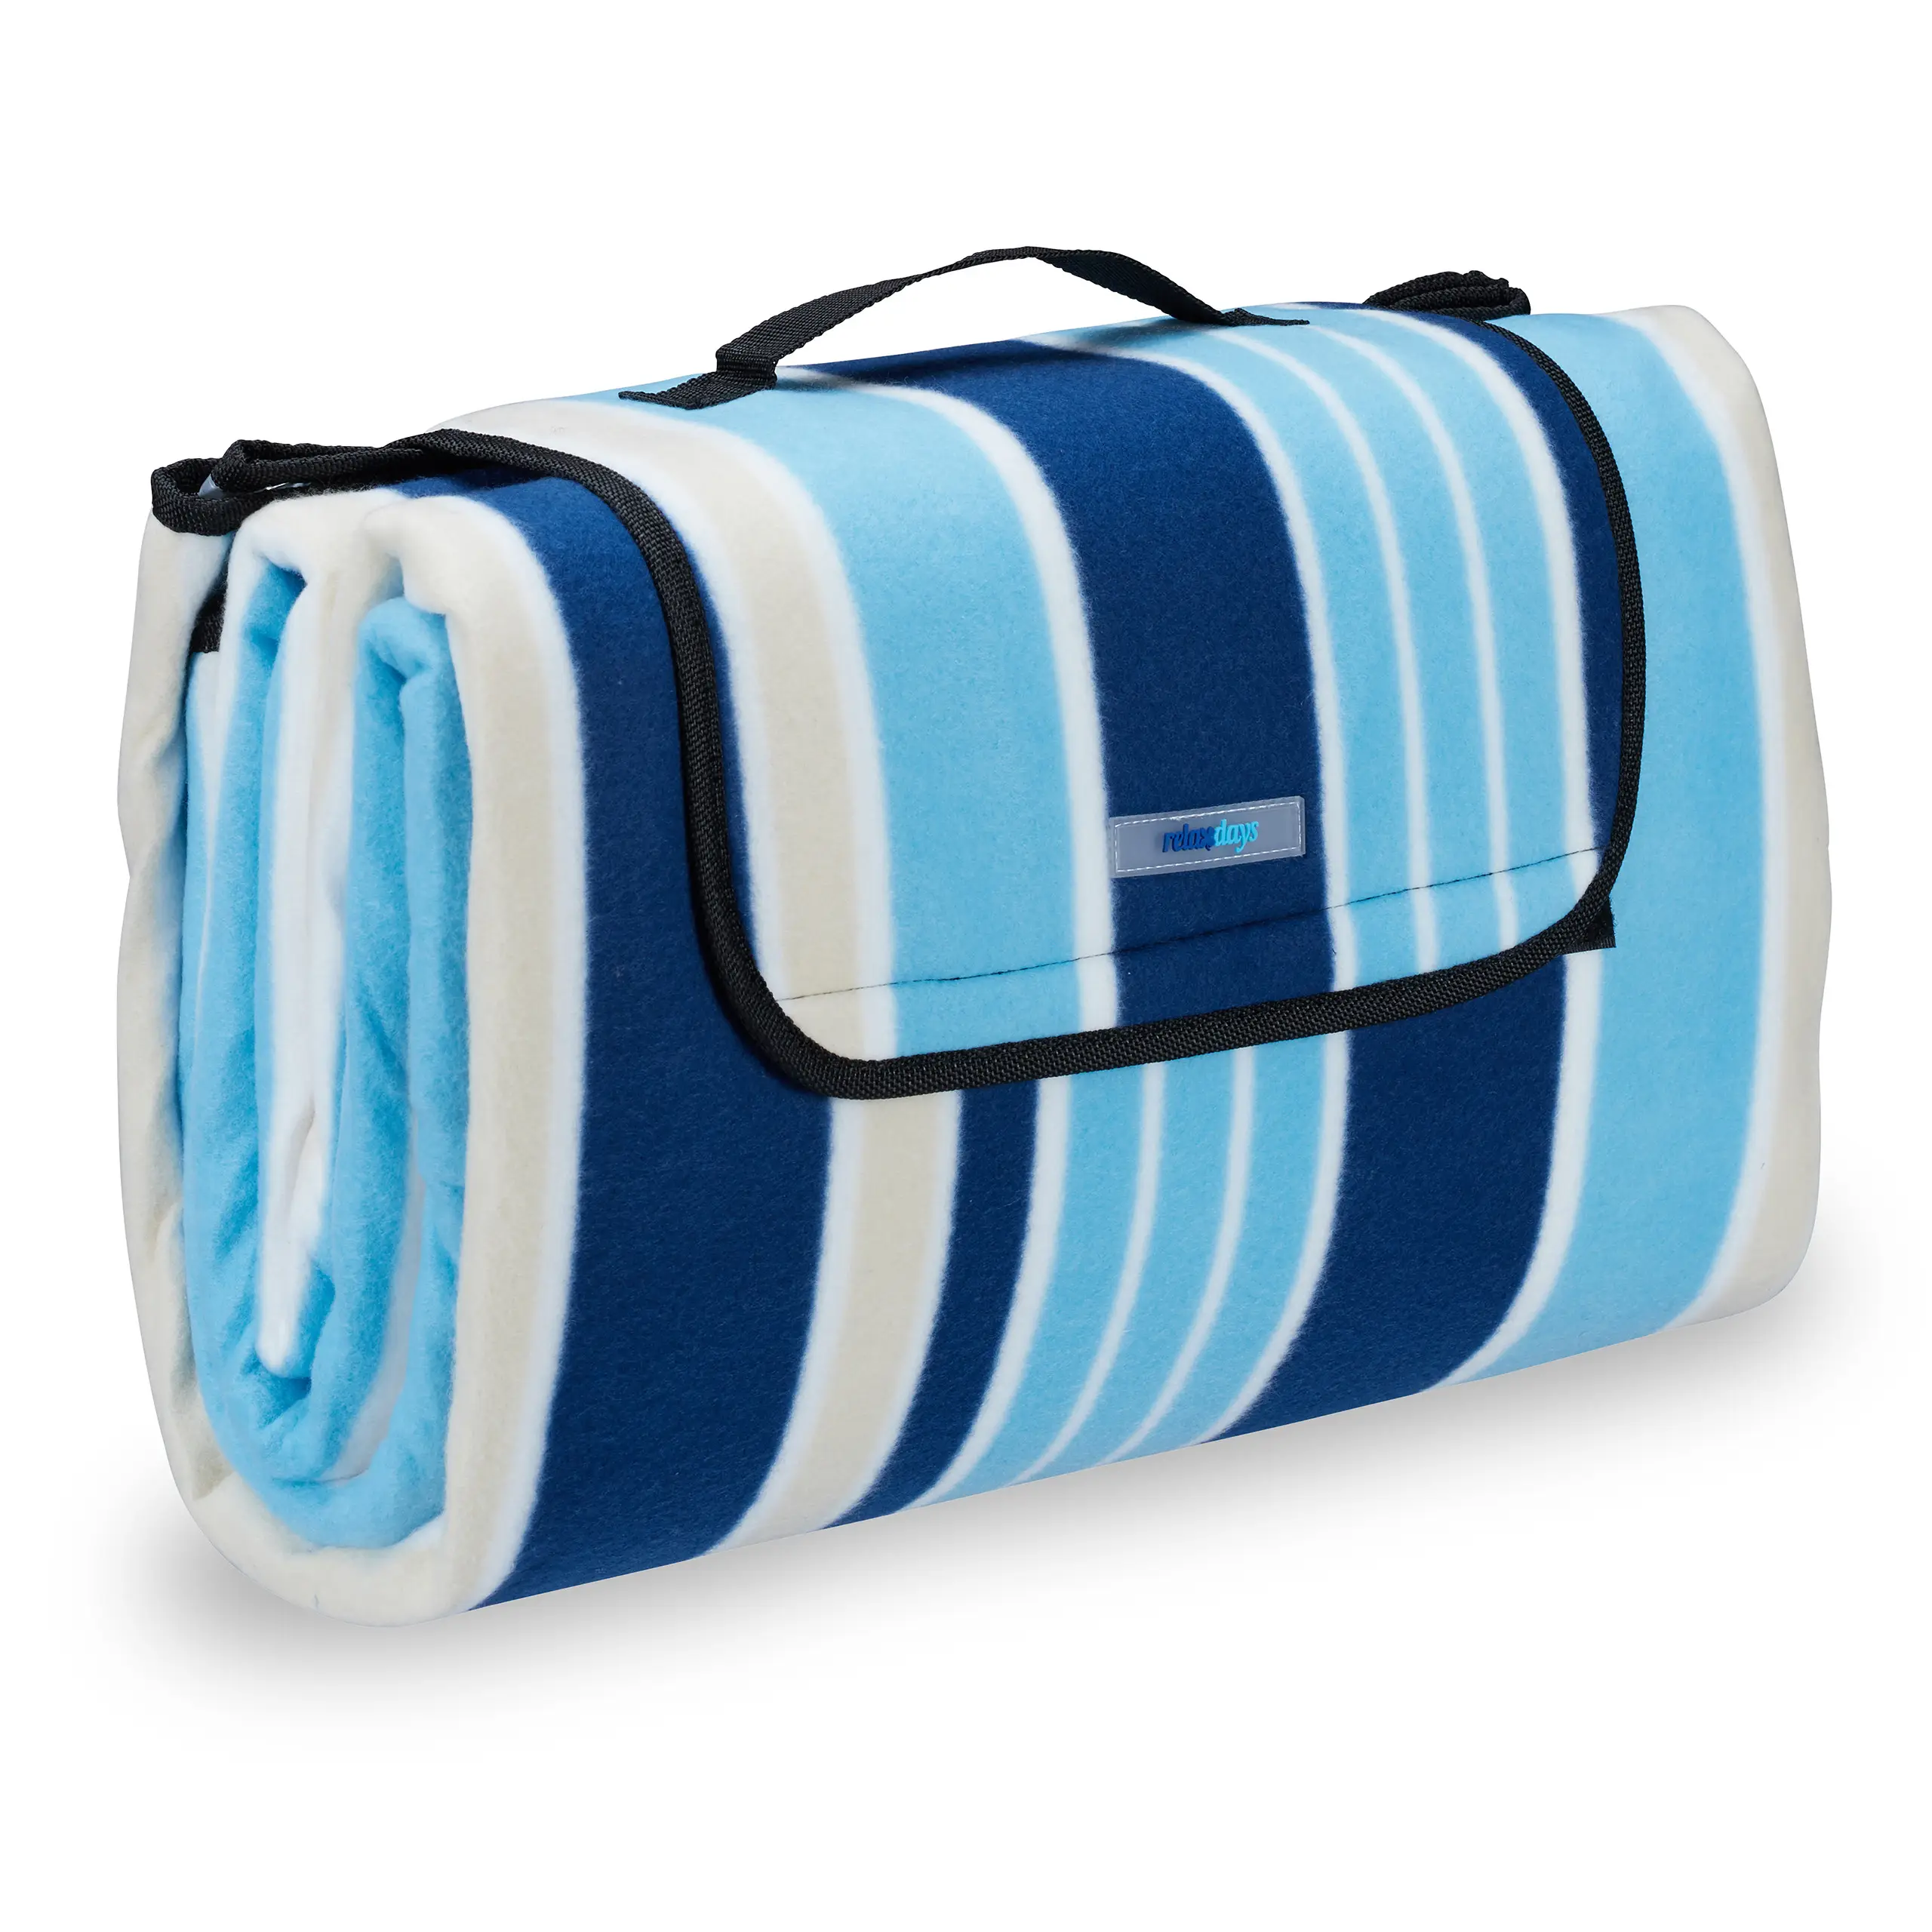 Picknickdecke blau-weiße Streifen | Kuscheldecken